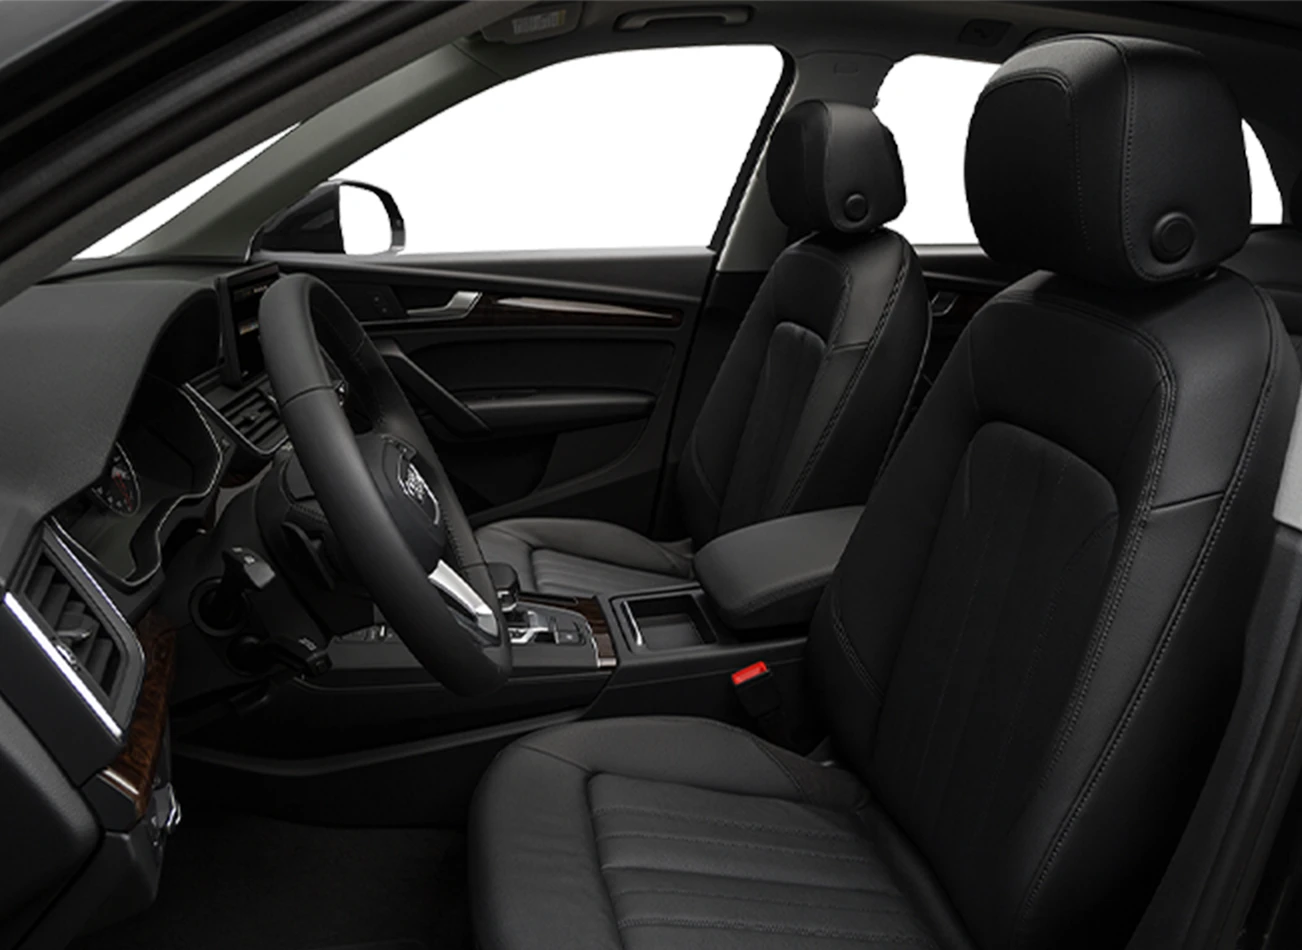 2019 Audi SQ5: Review, Trims, Specs, Price, New Interior Features